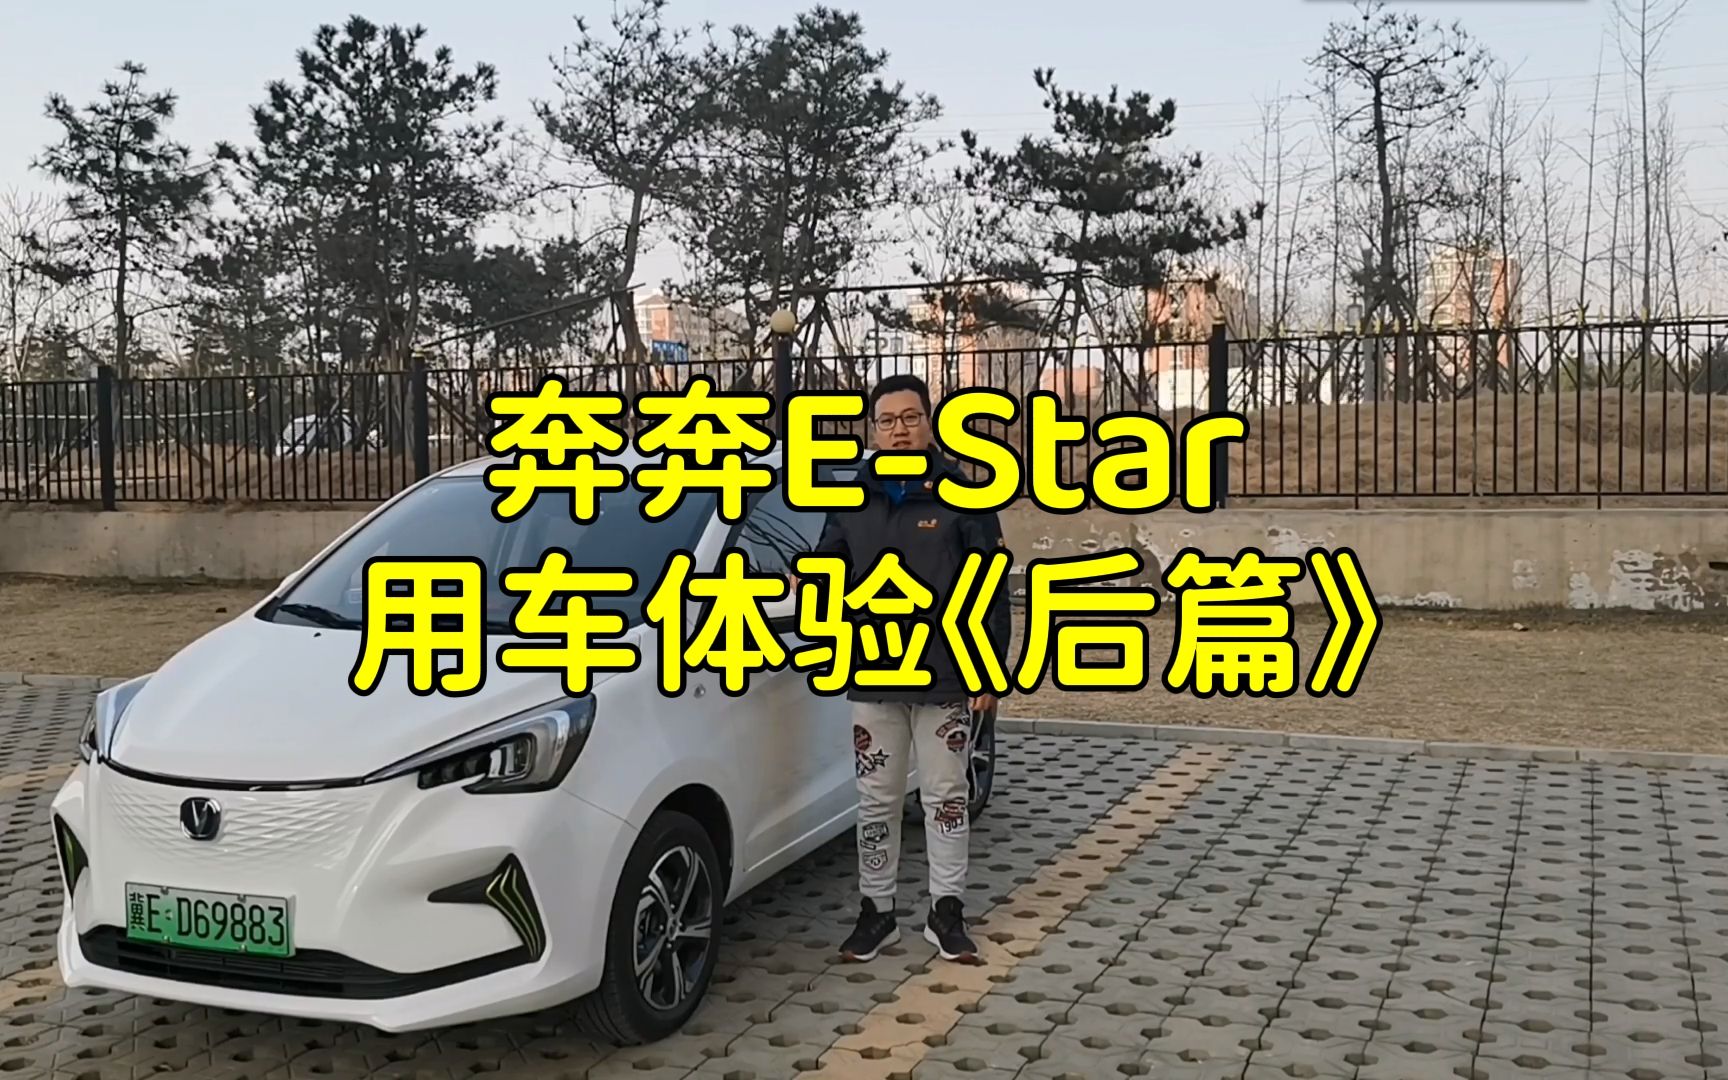 奔奔E-star用车体验《后篇》